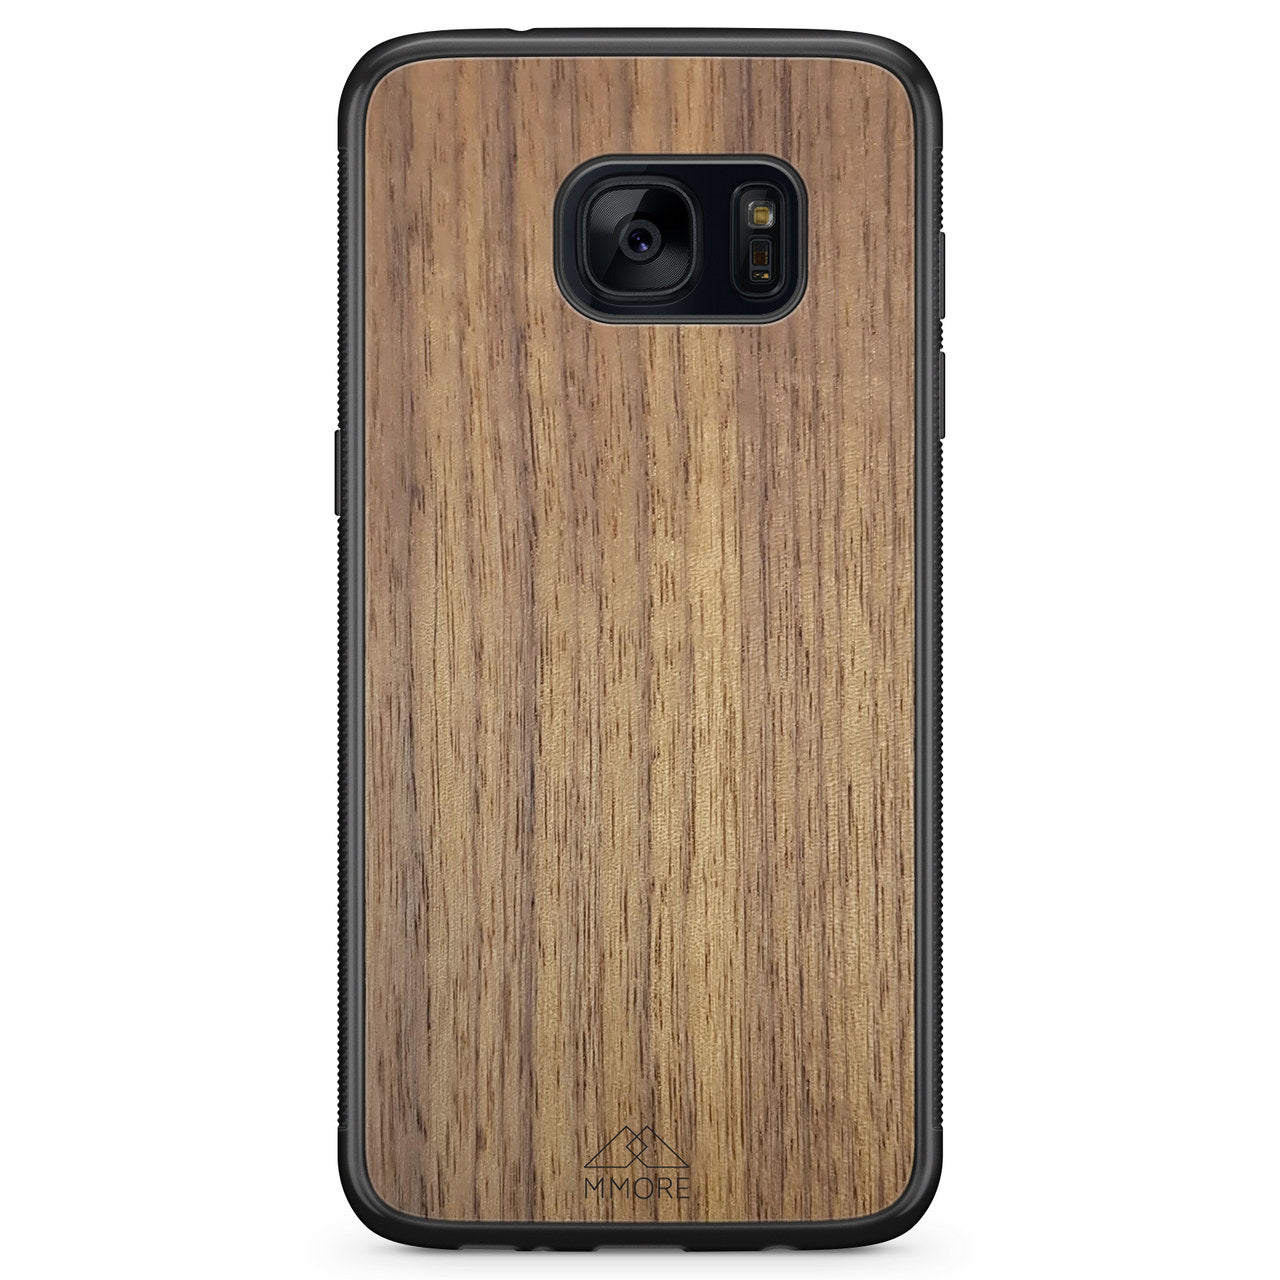 Samsung S7 Holz Handyhülle aus amerikanischem Walnussholz